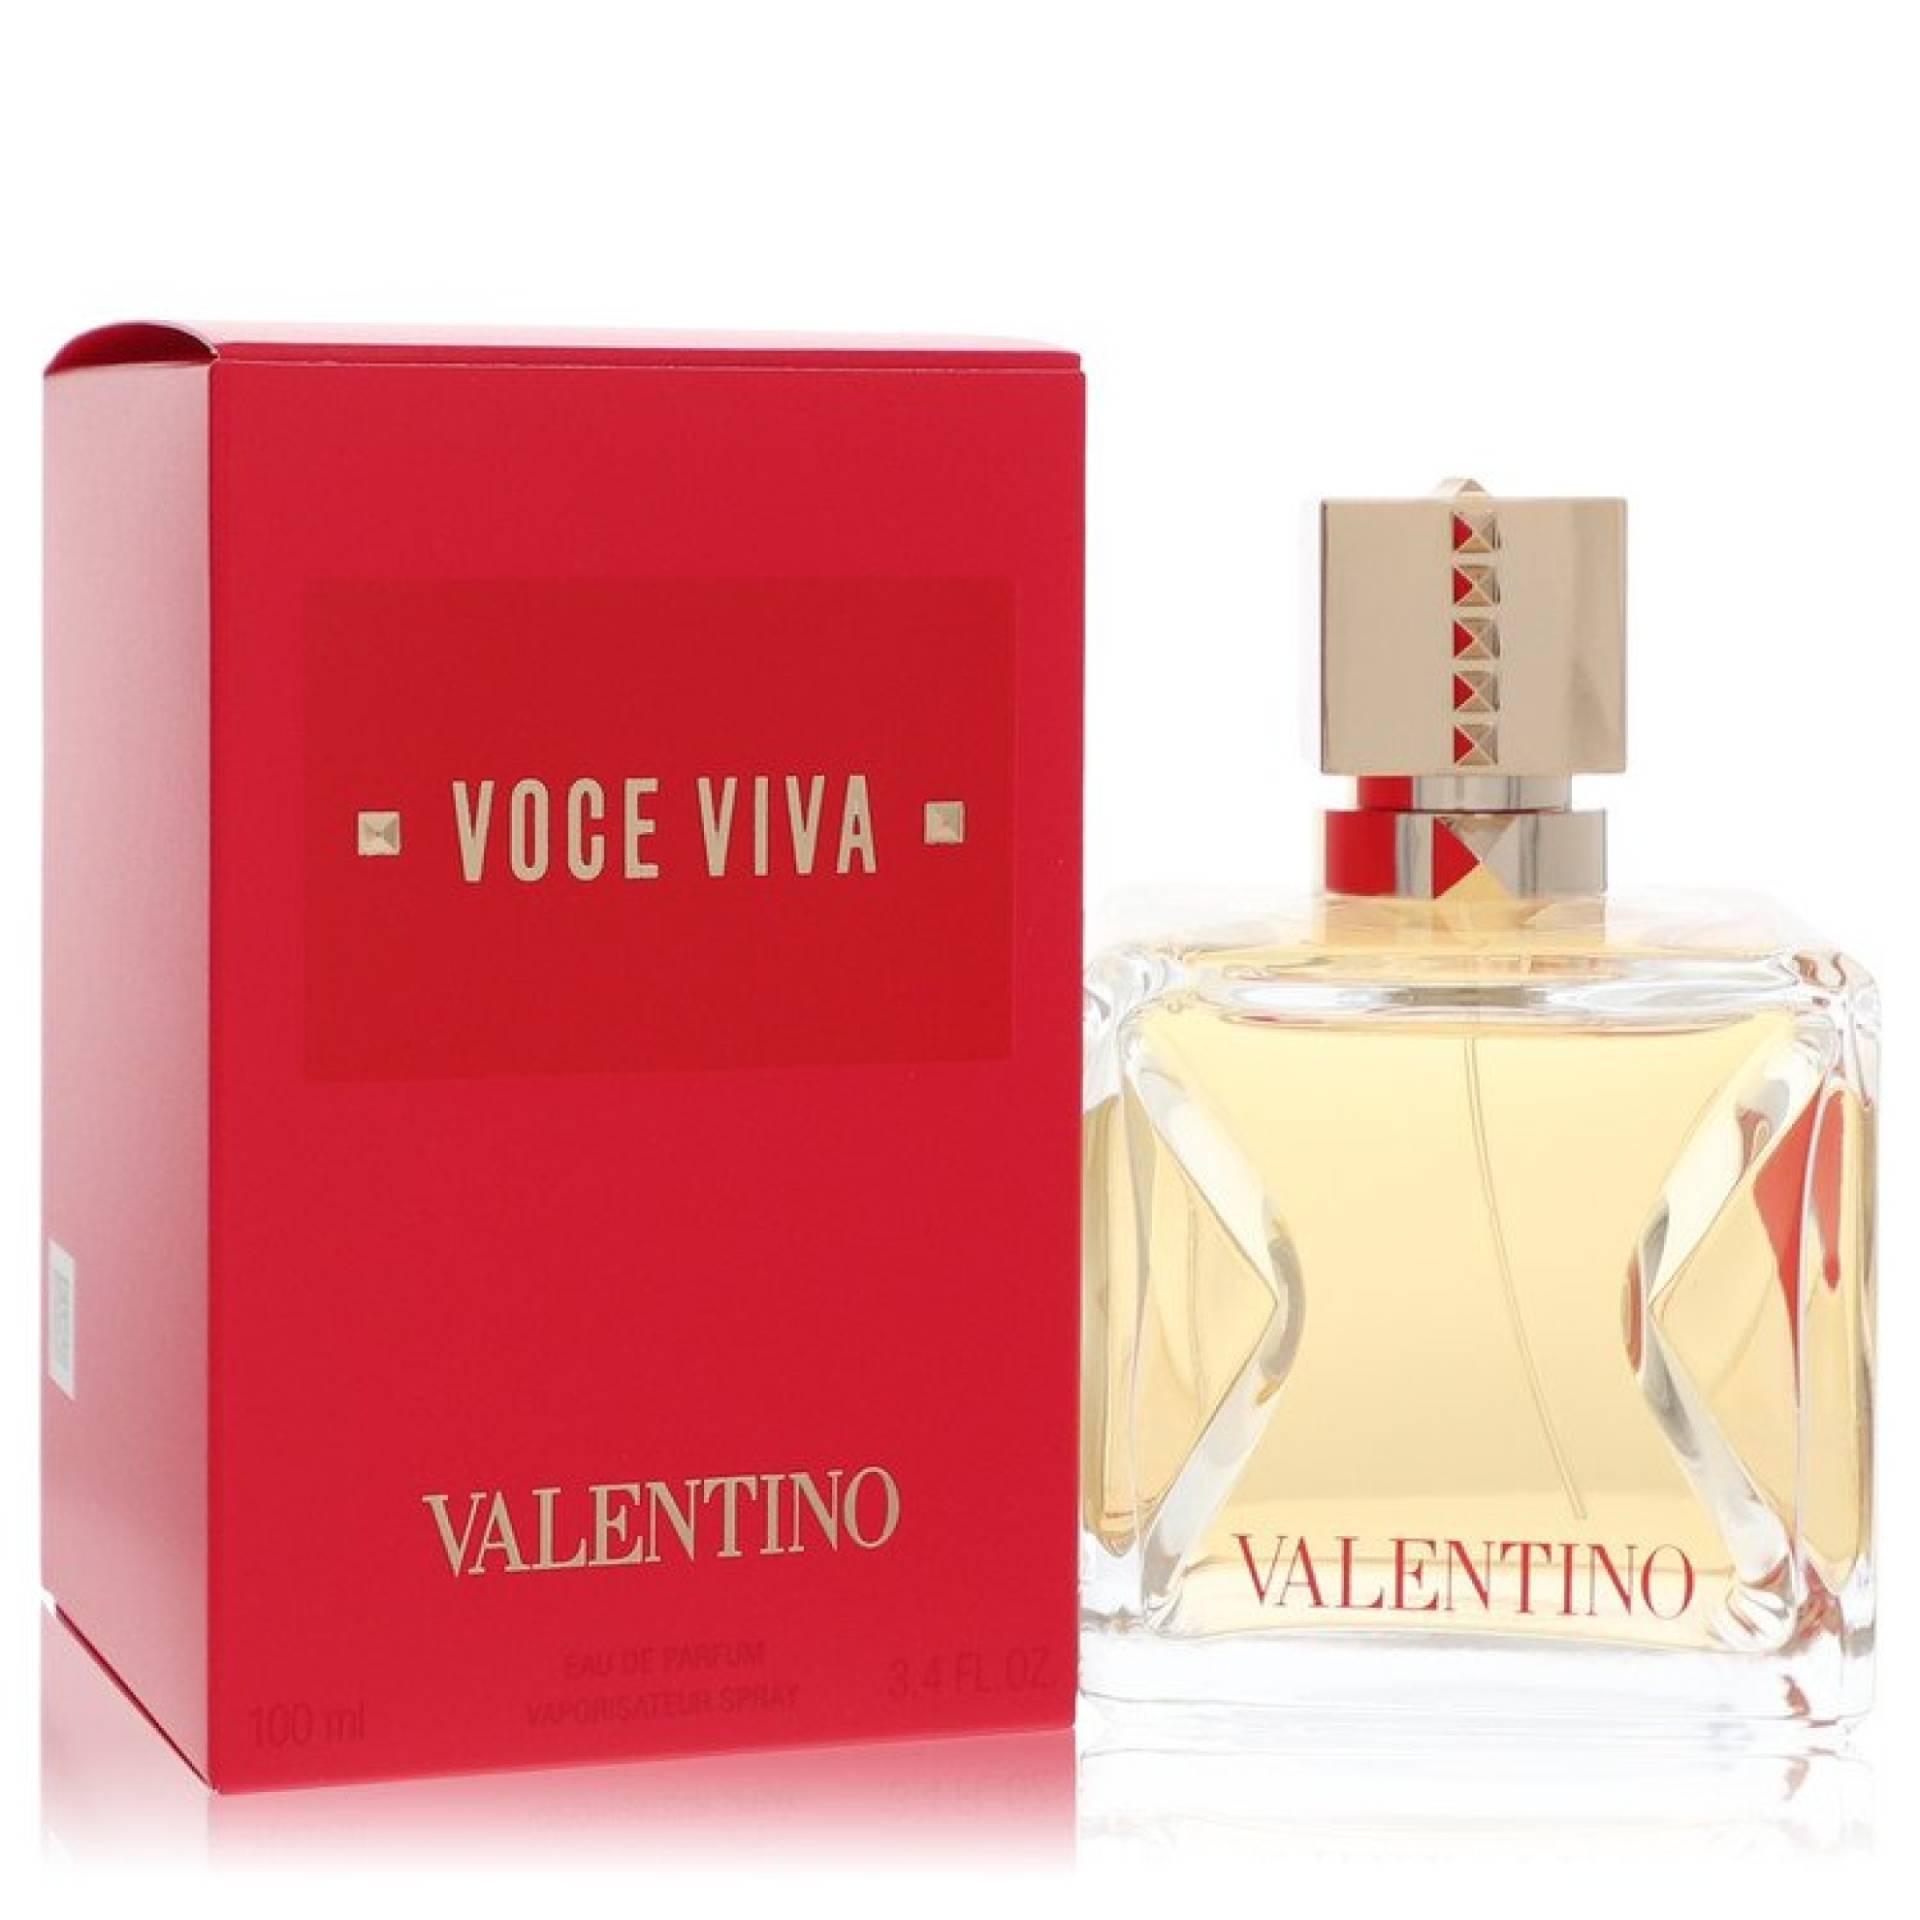 Valentino Voce Viva Eau De Parfum Spray (Unboxed) 51 ml von Valentino